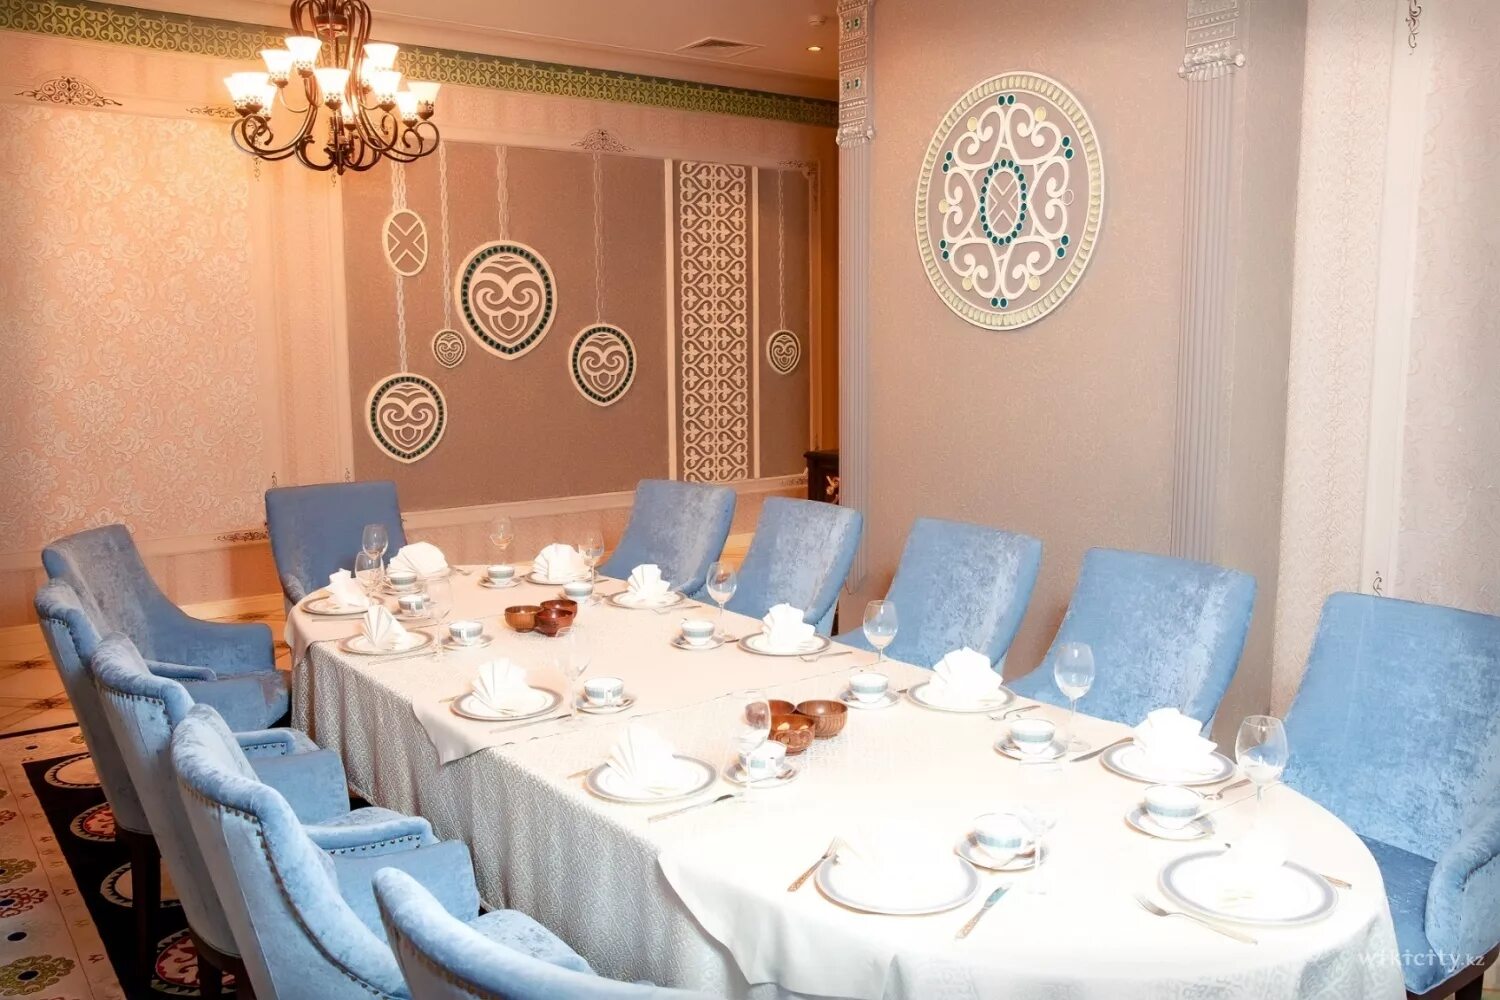 Кафе в казахском стиле. Ресторан в казахском стиле. Казахский интерьер для ресторана. Ресторан казахской кухни